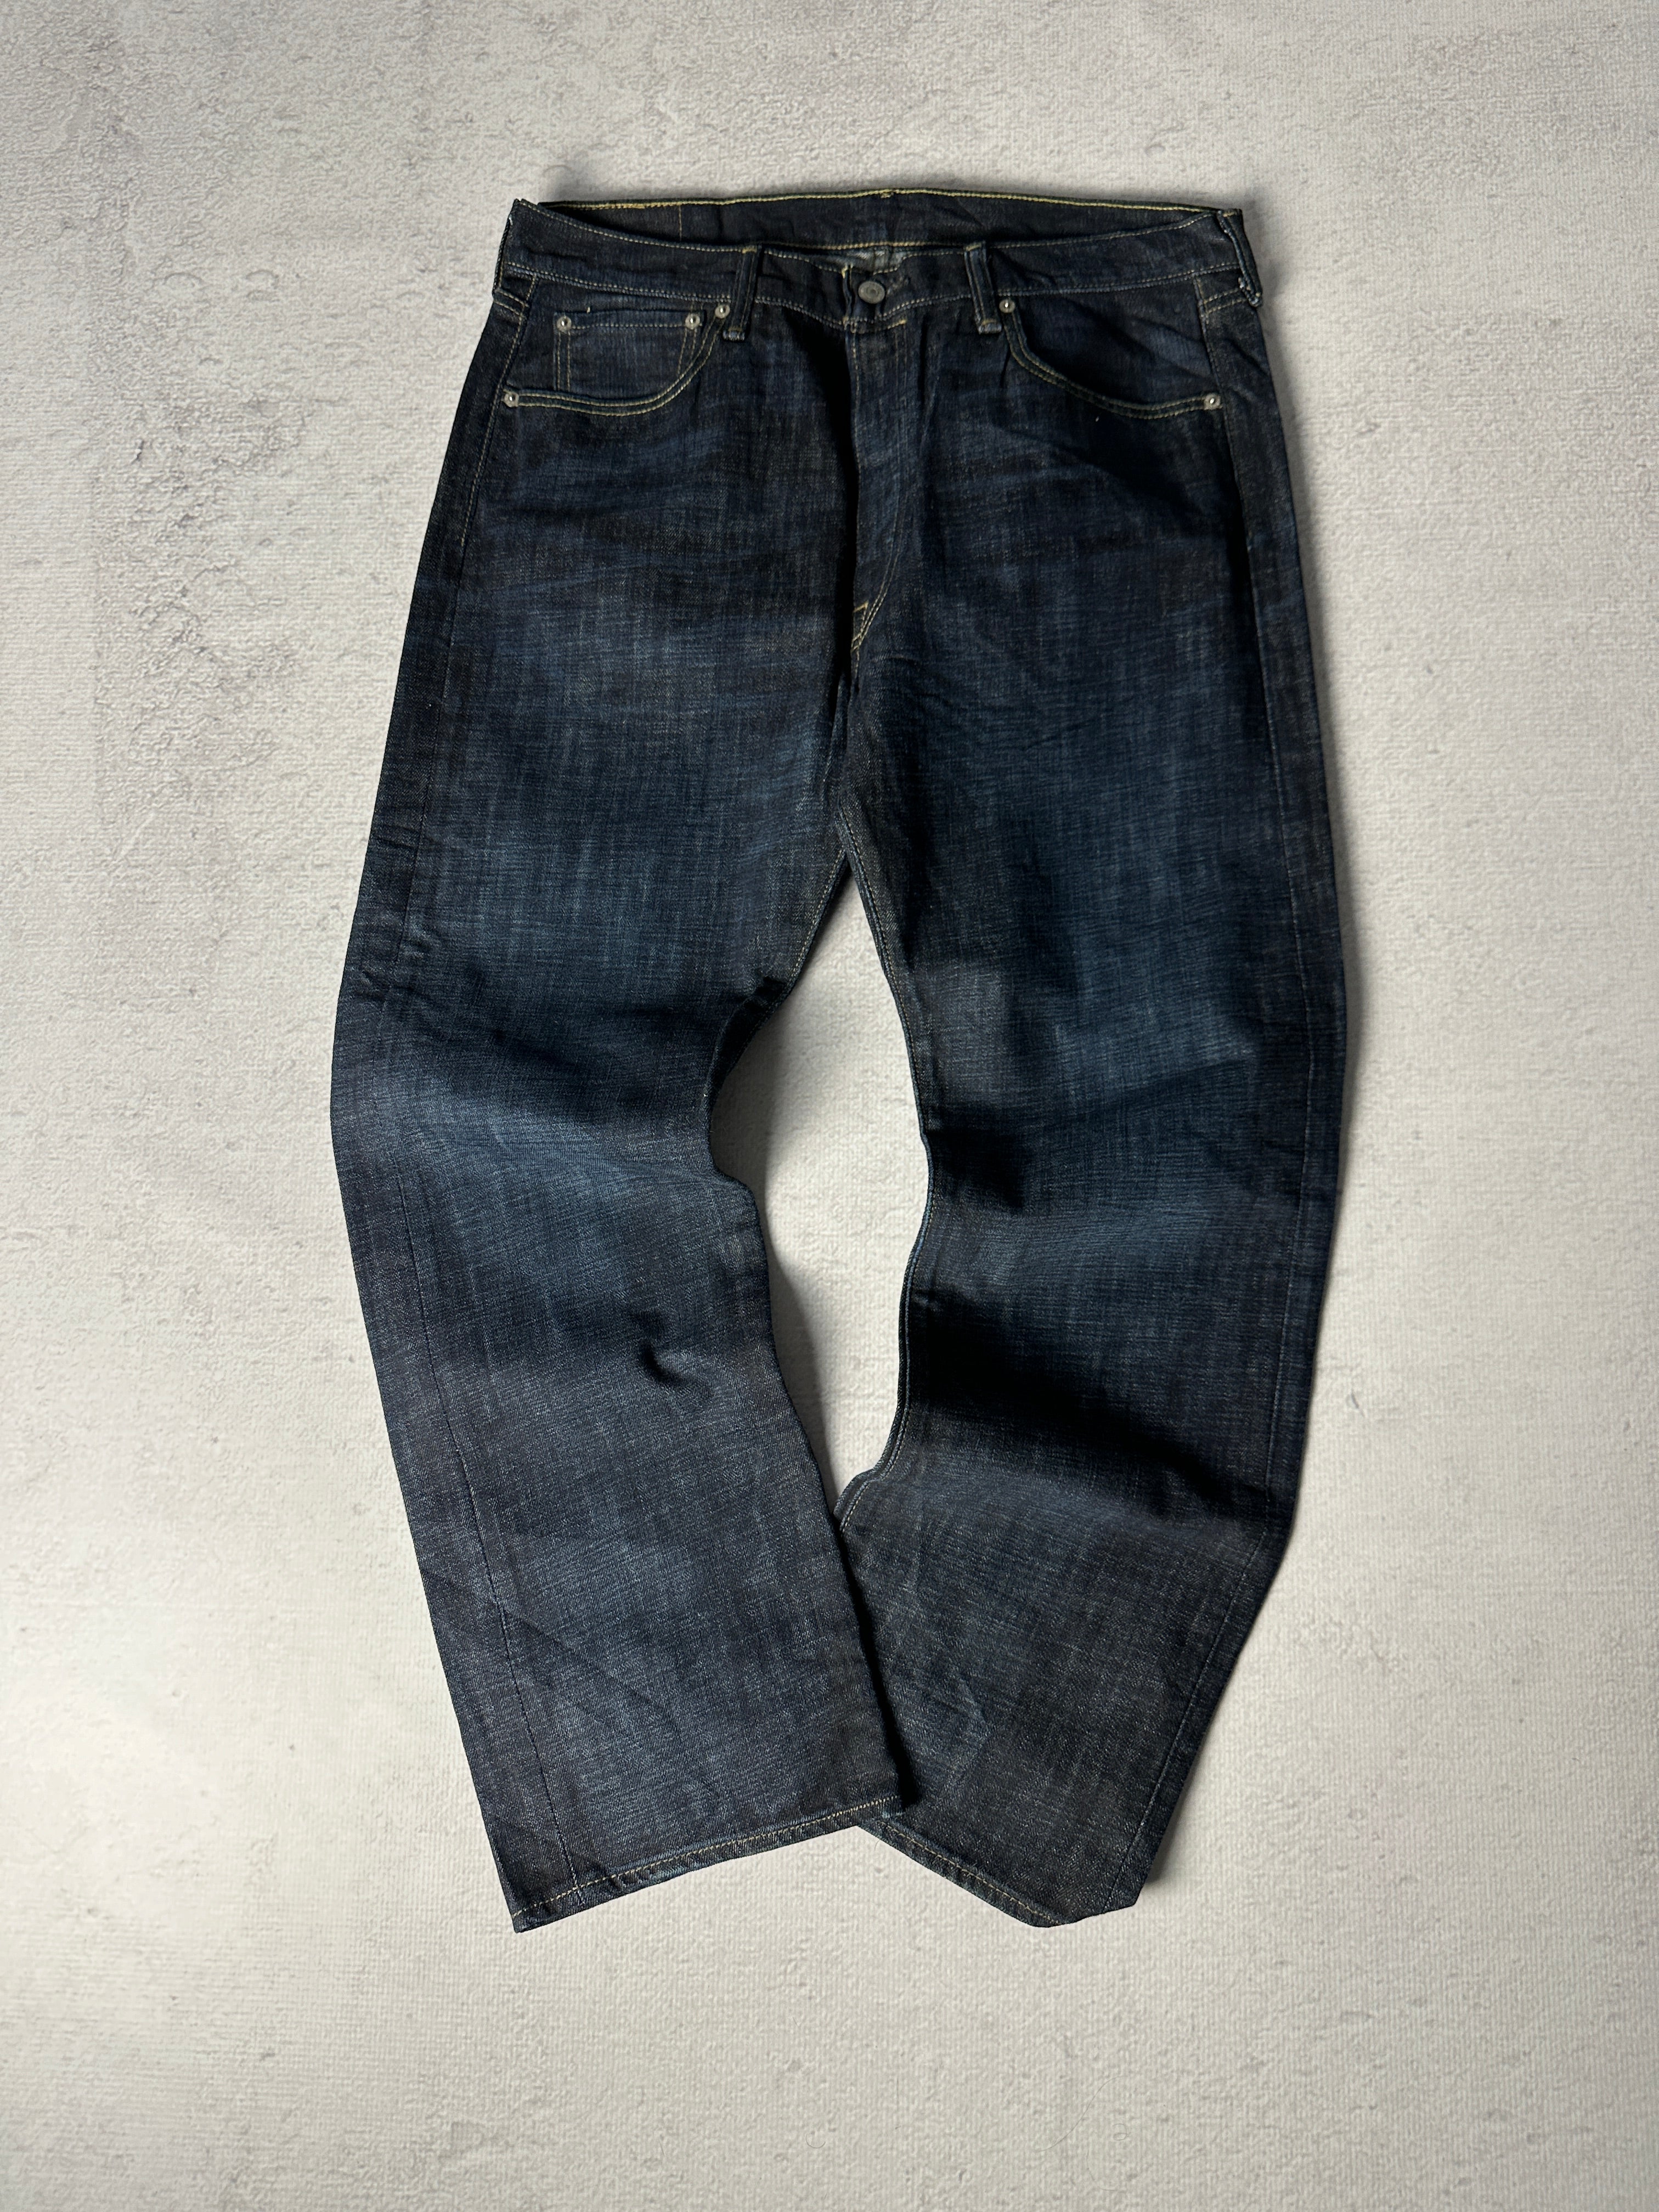 Vintage Levis 501 Jeans - Men's 36W30L